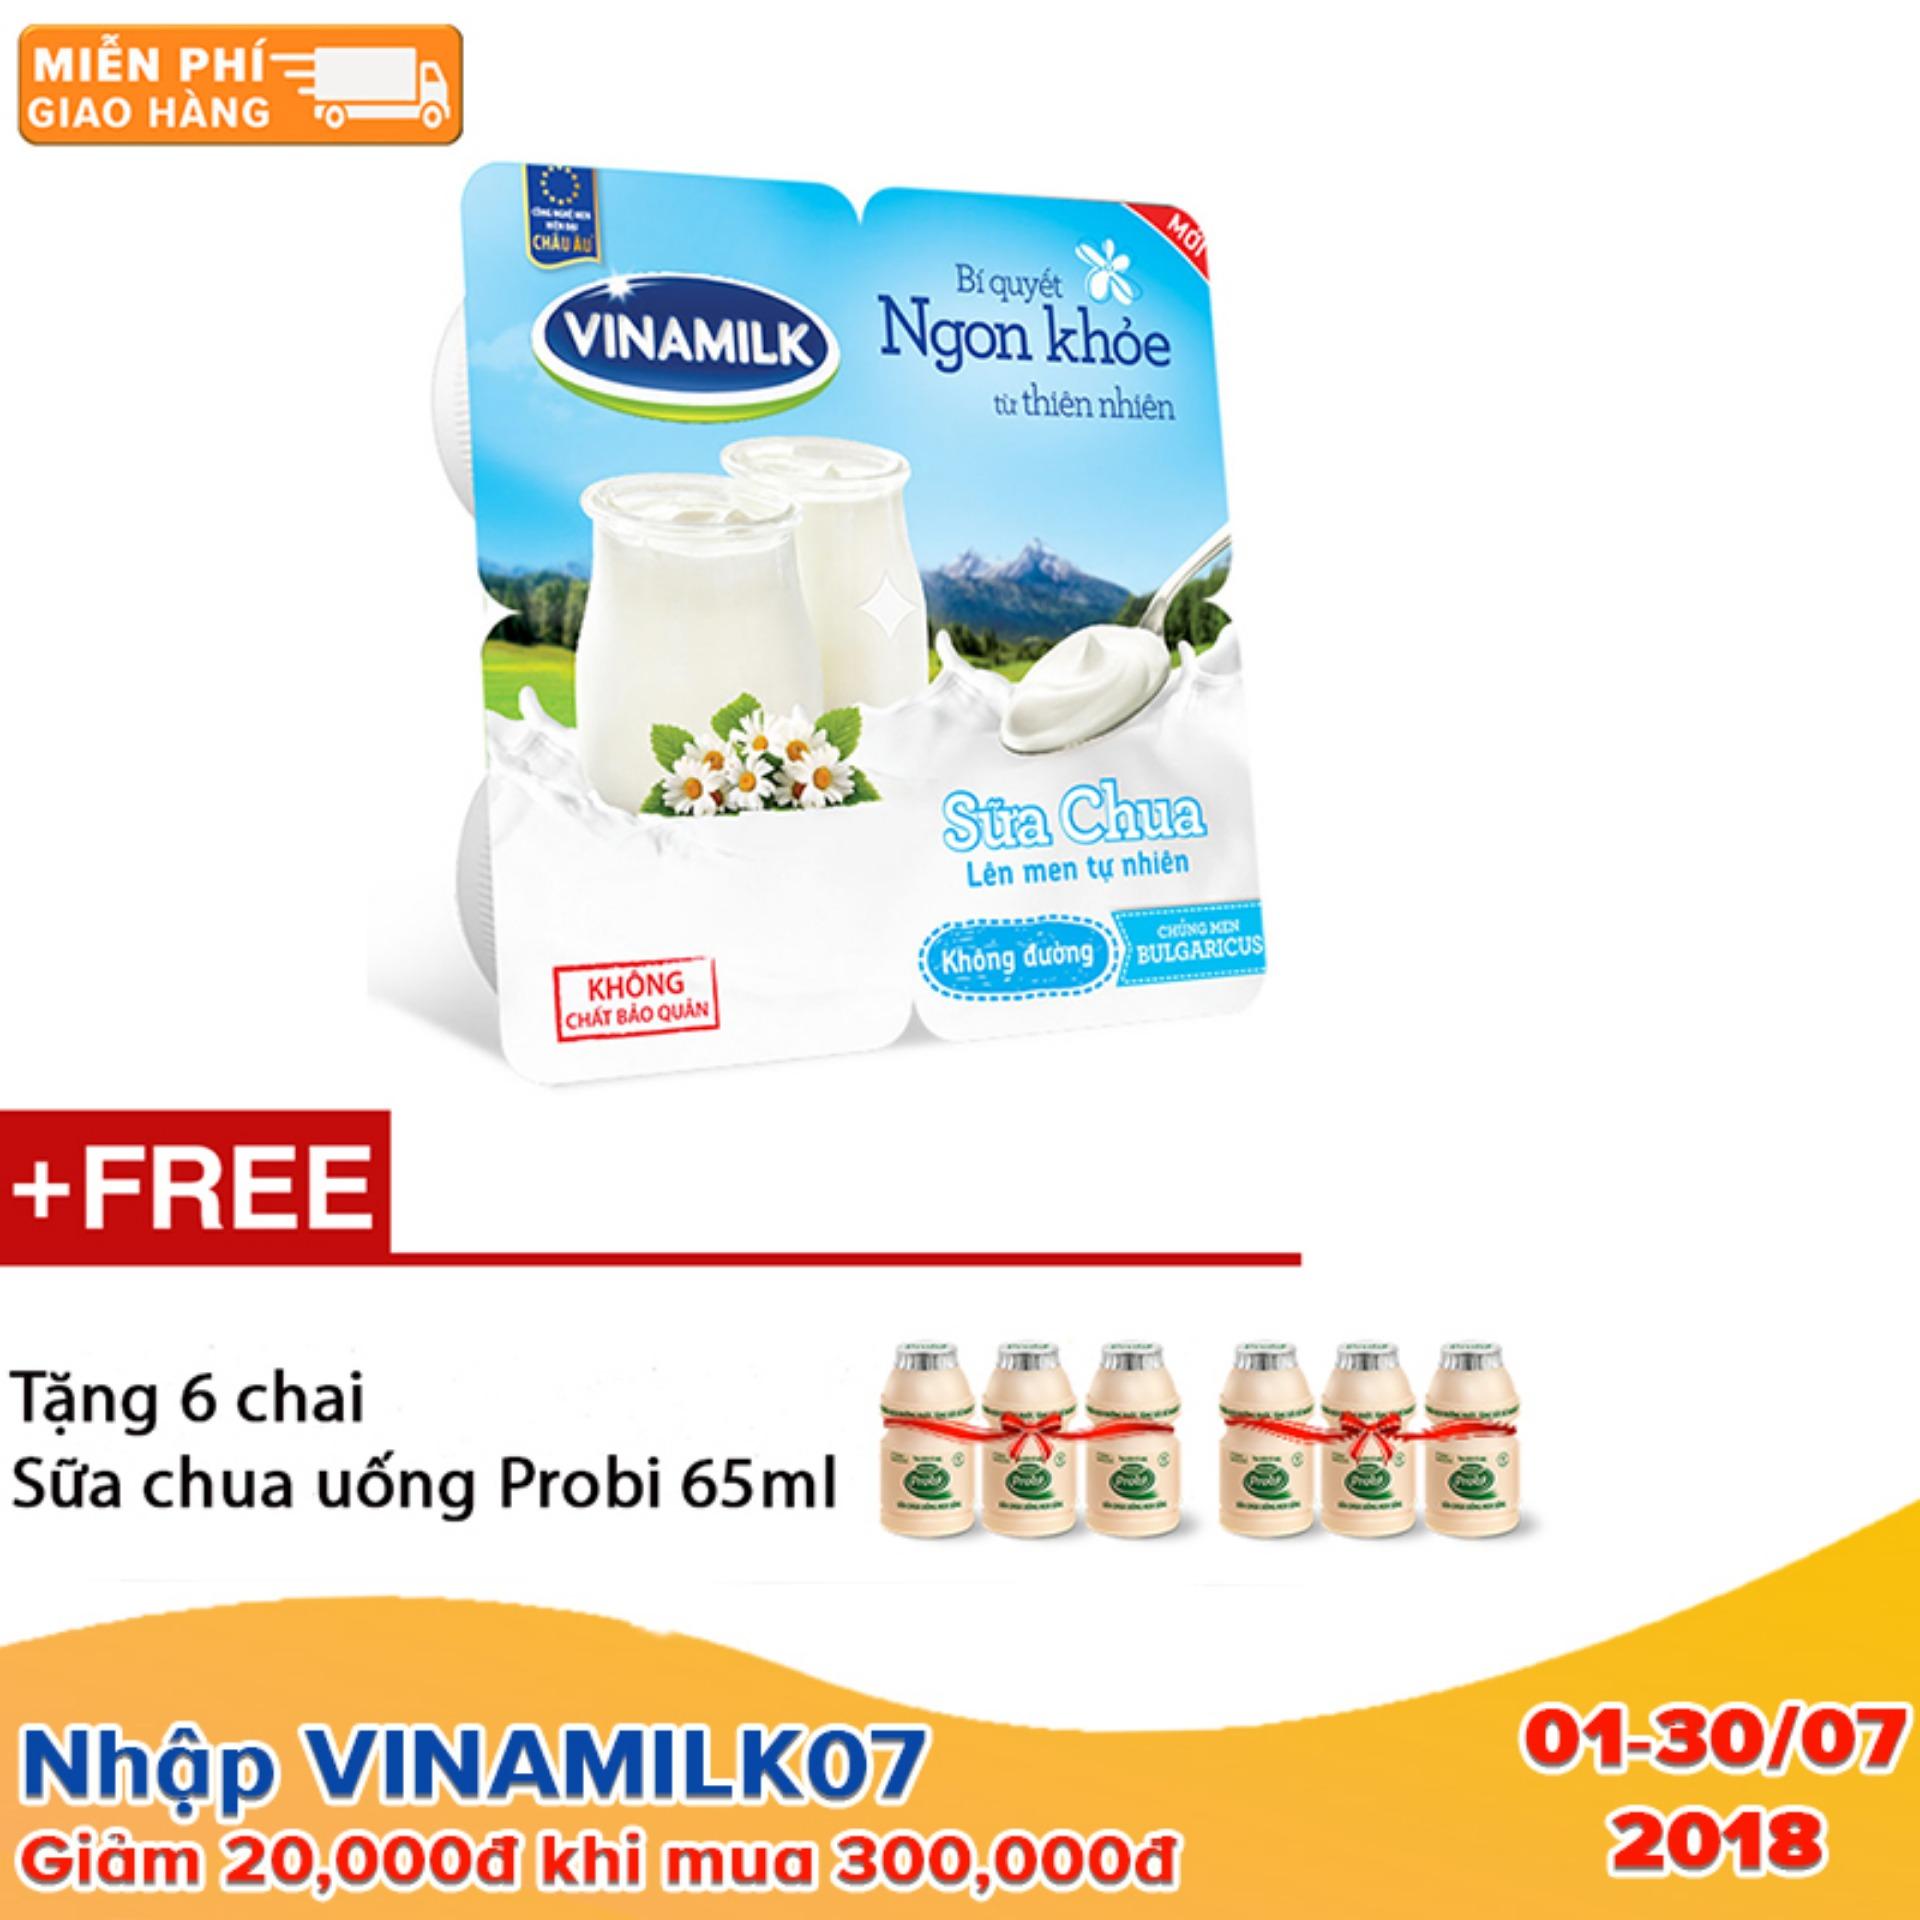 Thùng 48 hộp Sữa chua ăn Vinamilk không đường - 100g - Tặng 6 chai sữa chua uống Probi 65ml